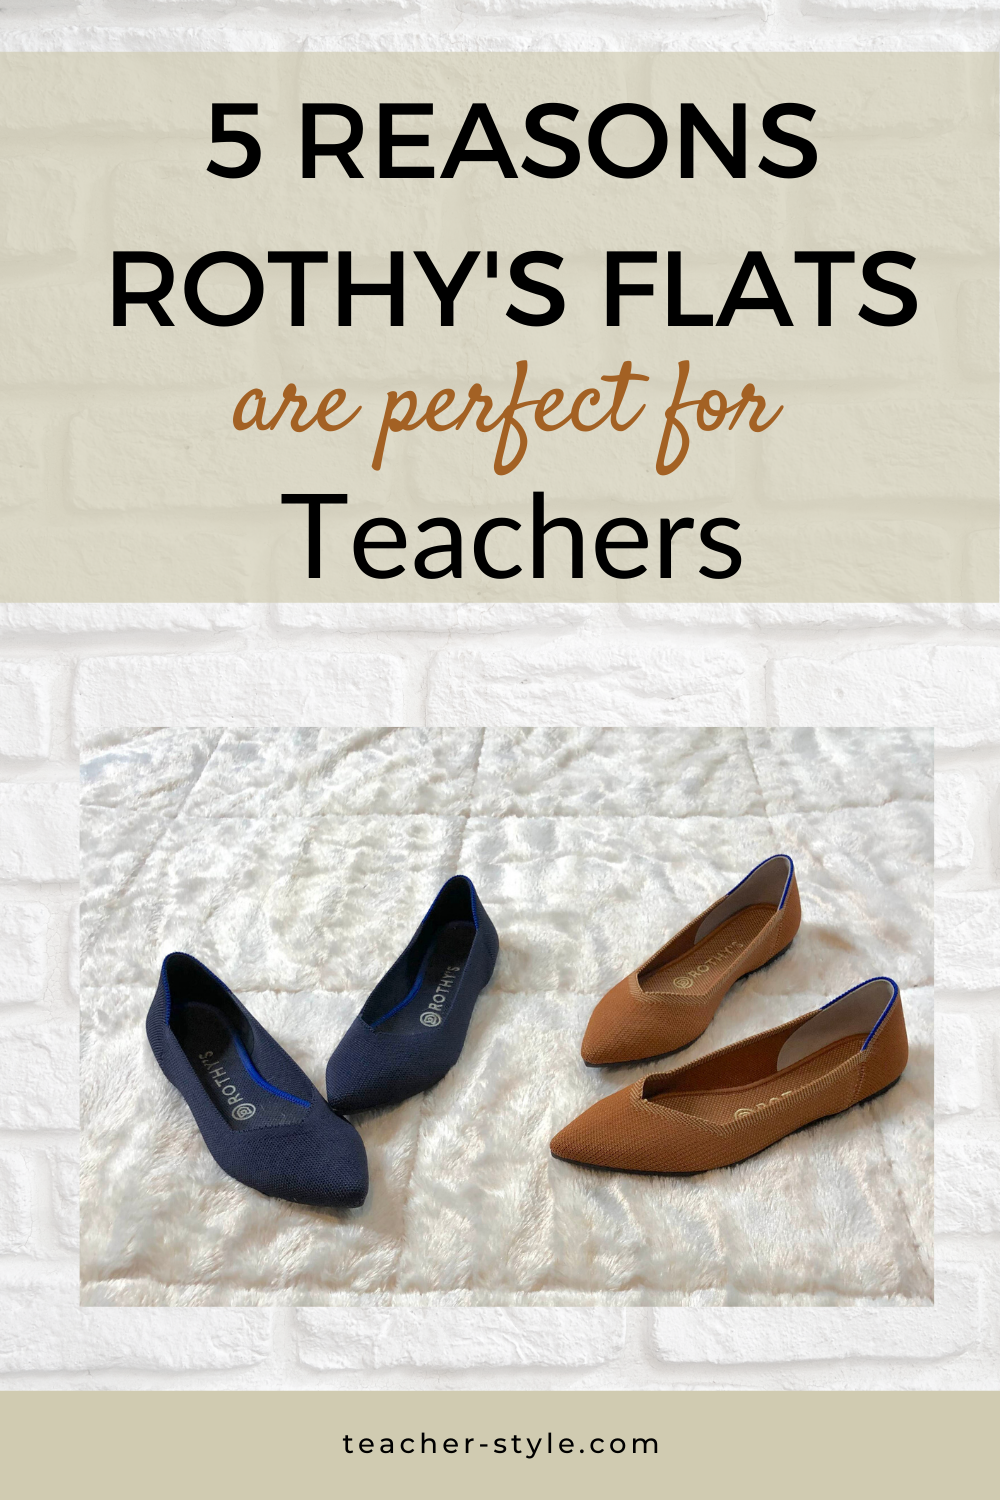 rothys for teachers